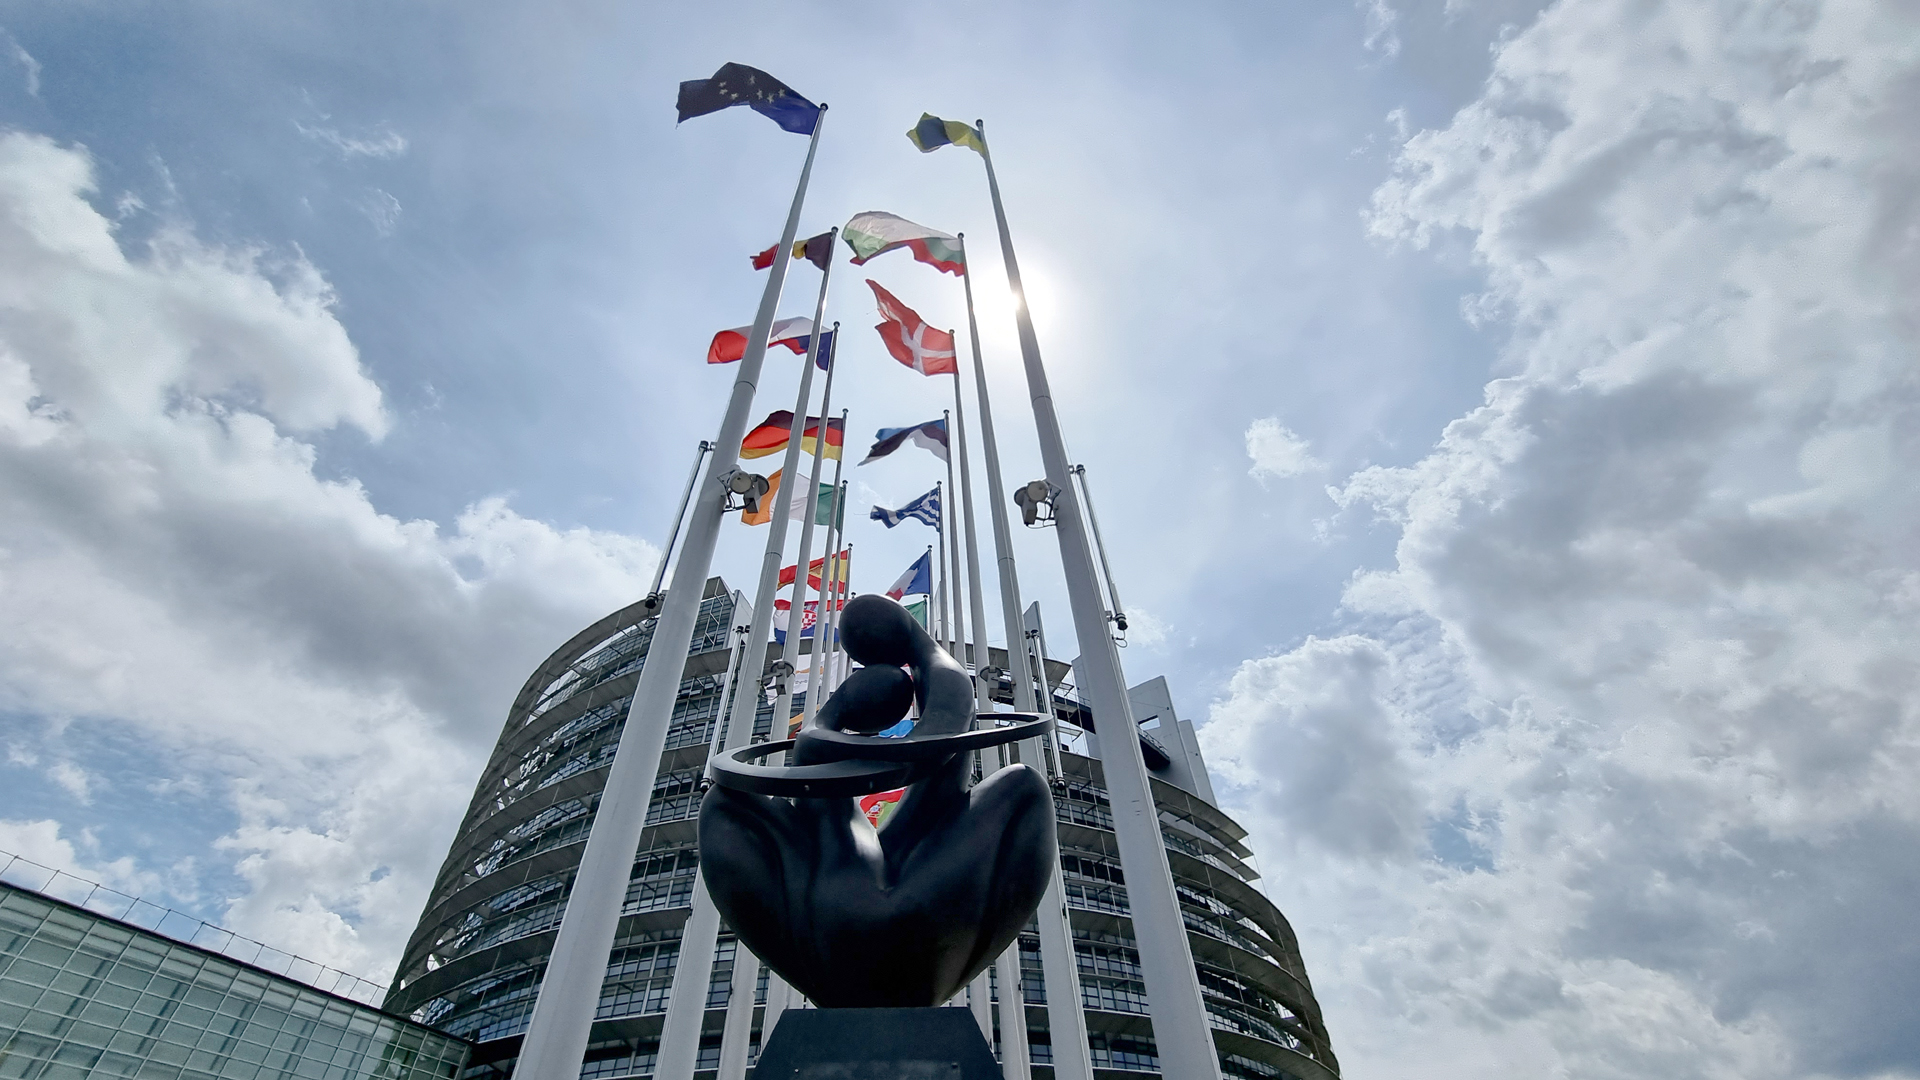 Fotostrecke Mein Europa 24: Vorplatz bzw. Eingangsbereich zum EU-Parlament in Straßburg, Frankreich